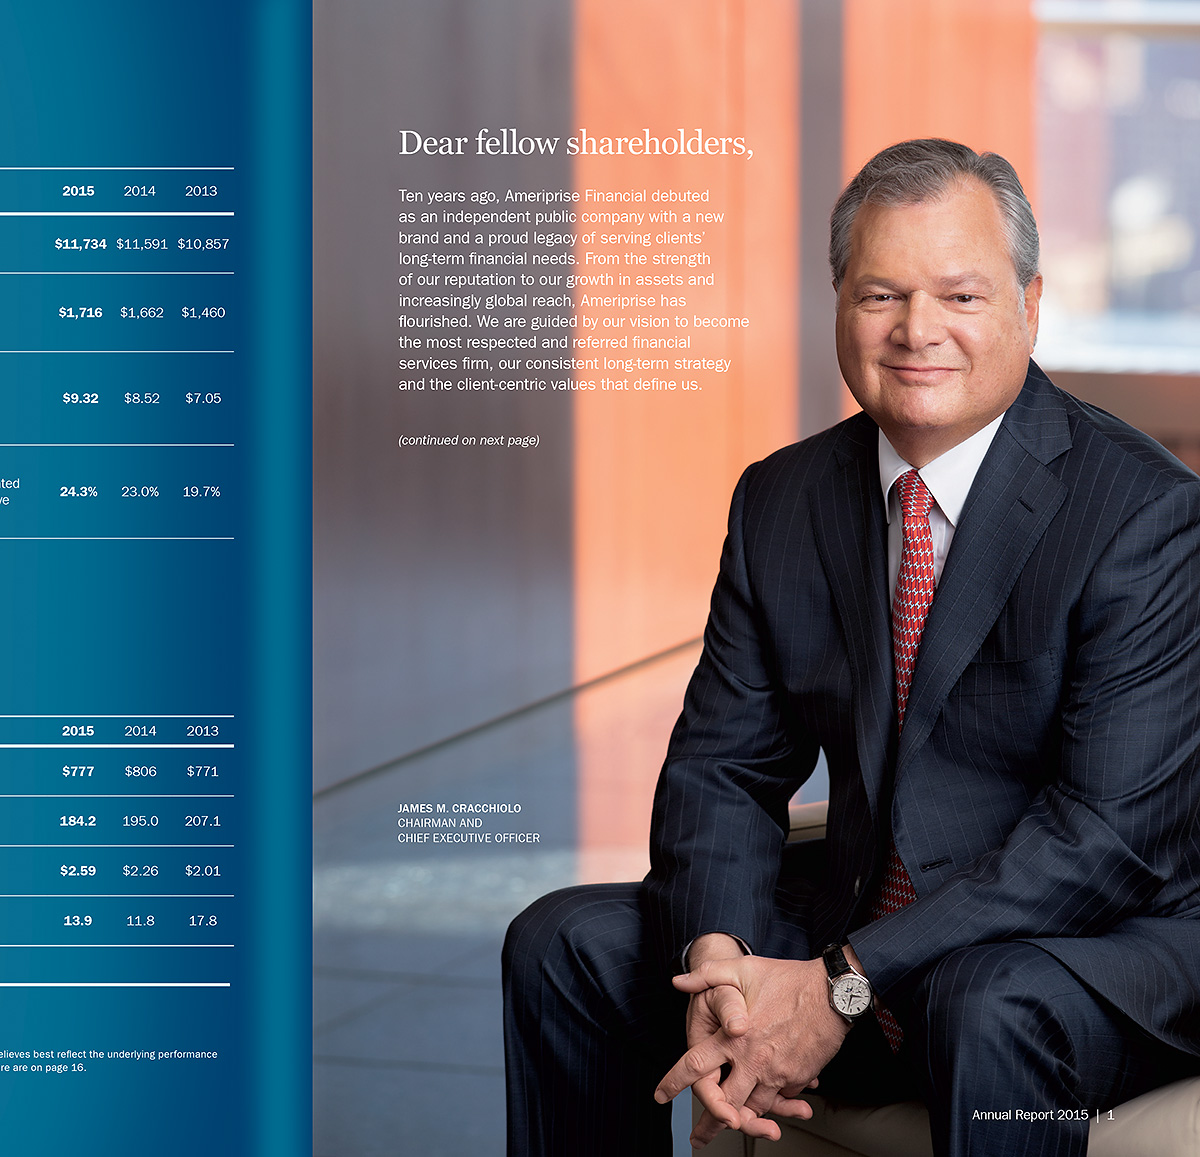 Jim Cracchiolo, CEO, Ameriprise Financial. Annual report portrait.